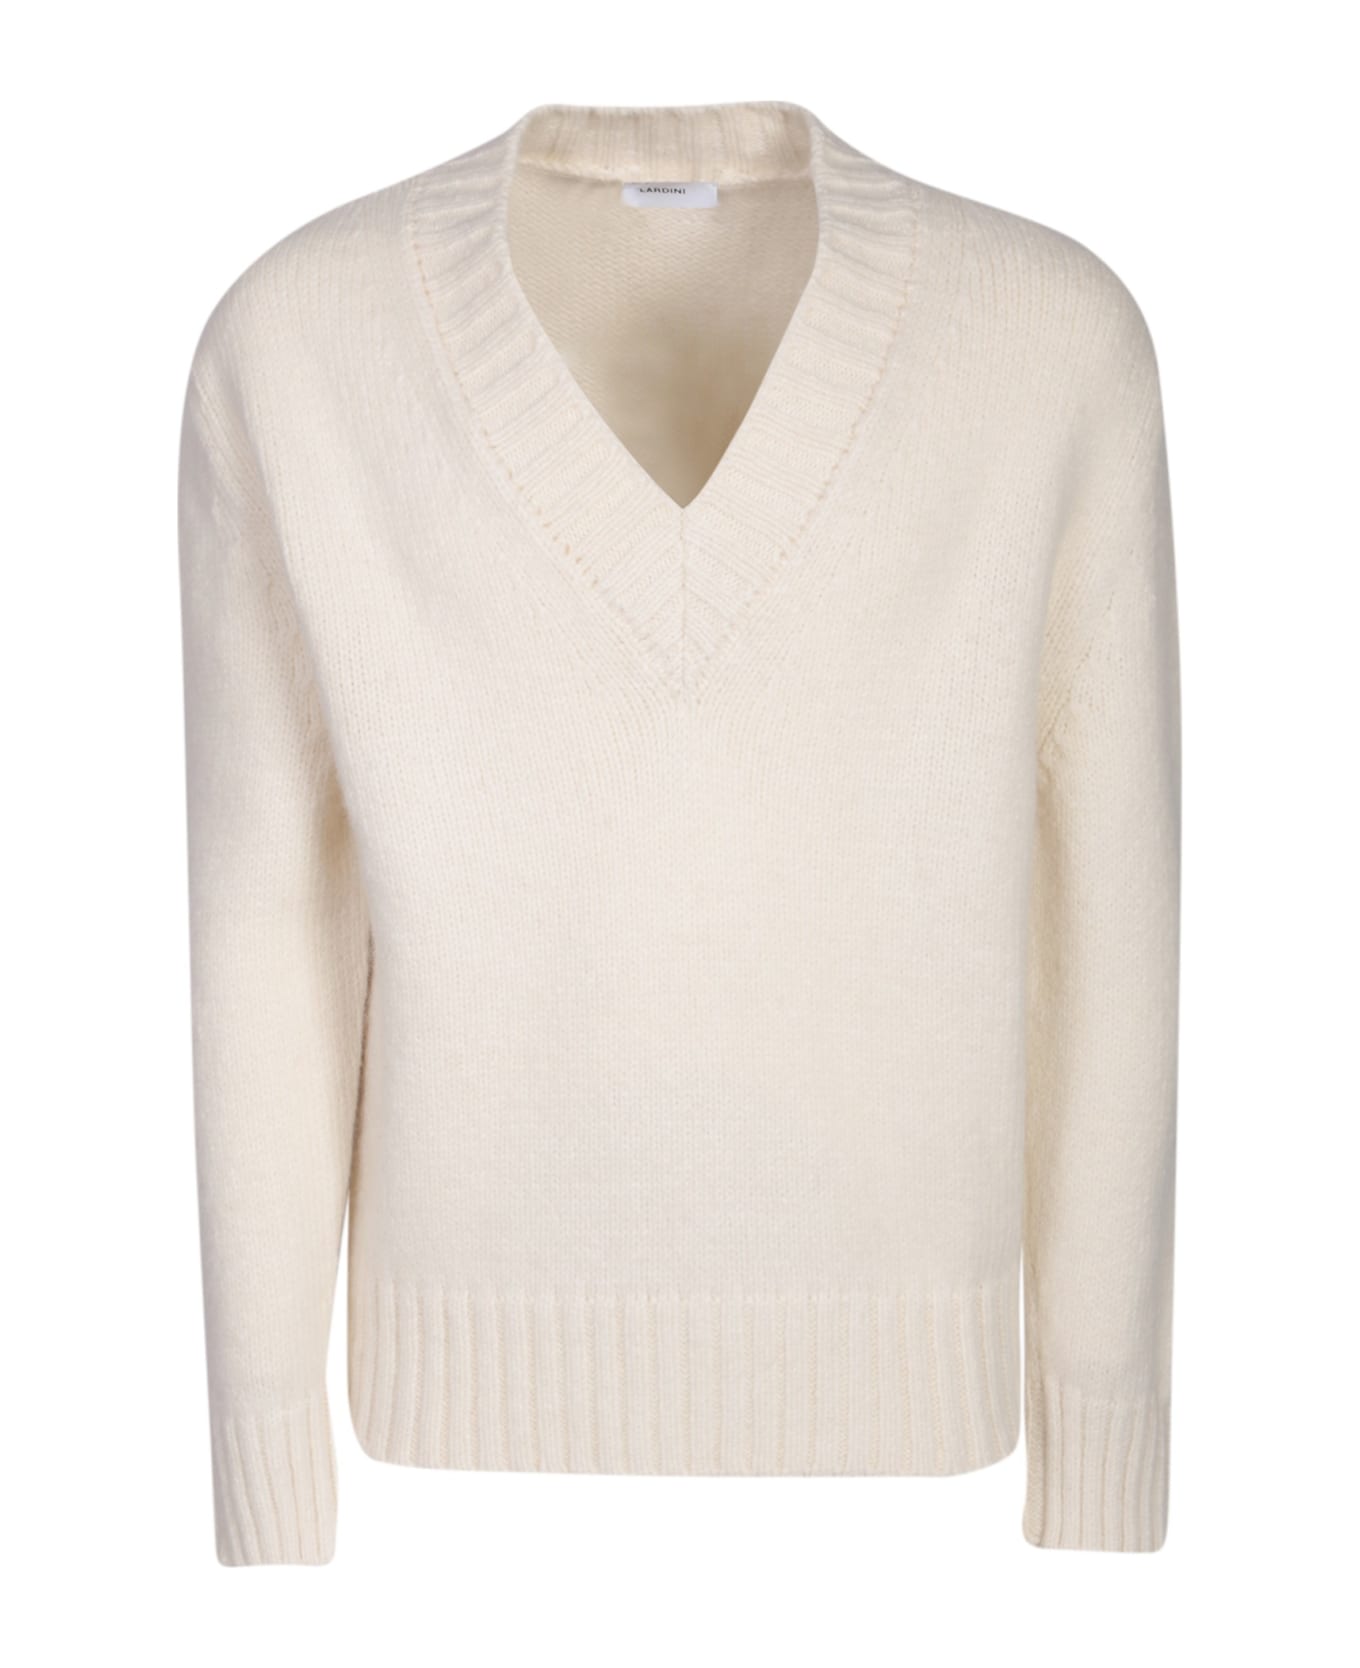 Lardini V-neck White Sweater - White ニットウェア